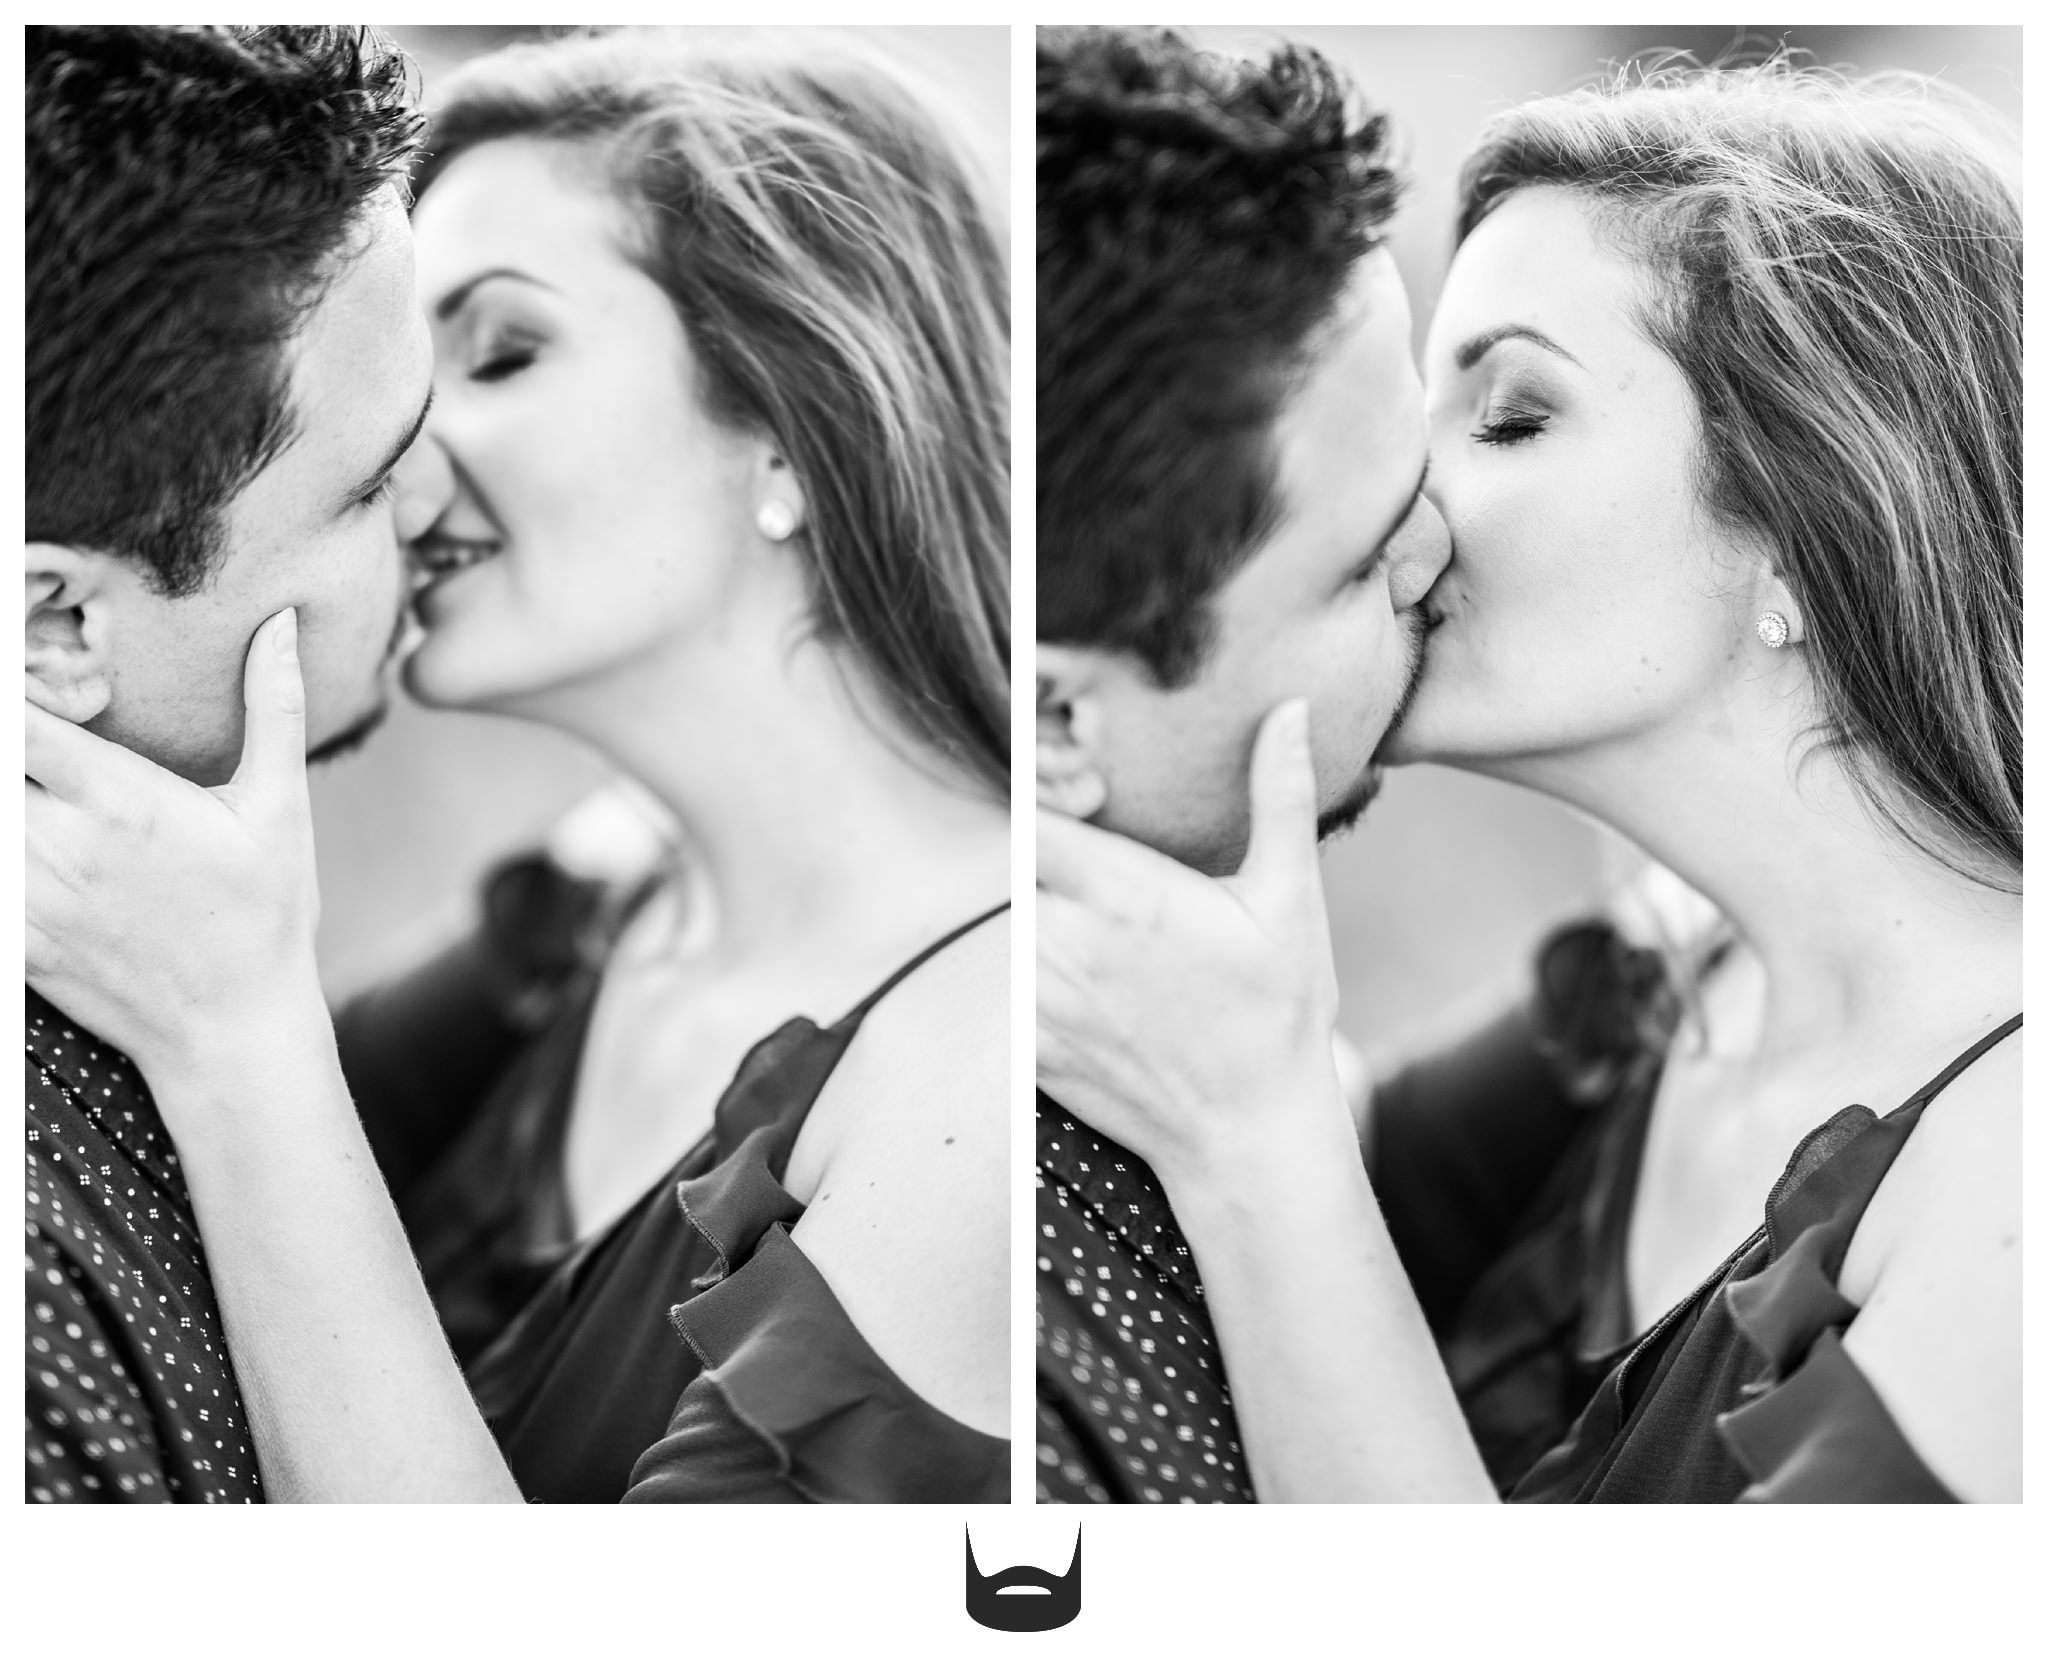 des moines engagement photography kiss